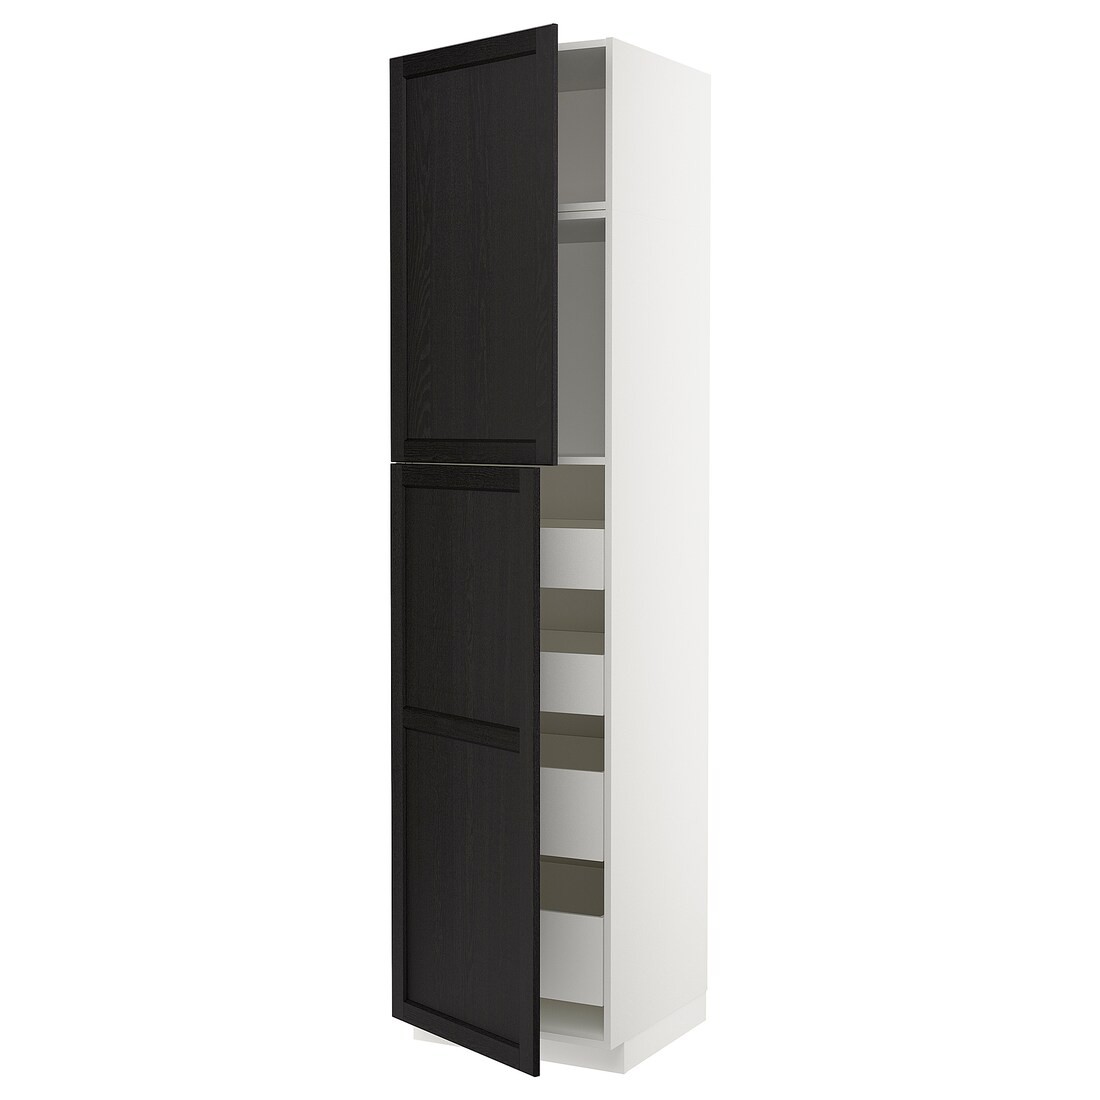 IKEA METOD МЕТОД / MAXIMERA МАКСИМЕРА Шкаф высокий 2 двери / 4 ящика, белый / Lerhyttan черная морилка, 60x60x240 см 39467950 | 394.679.50